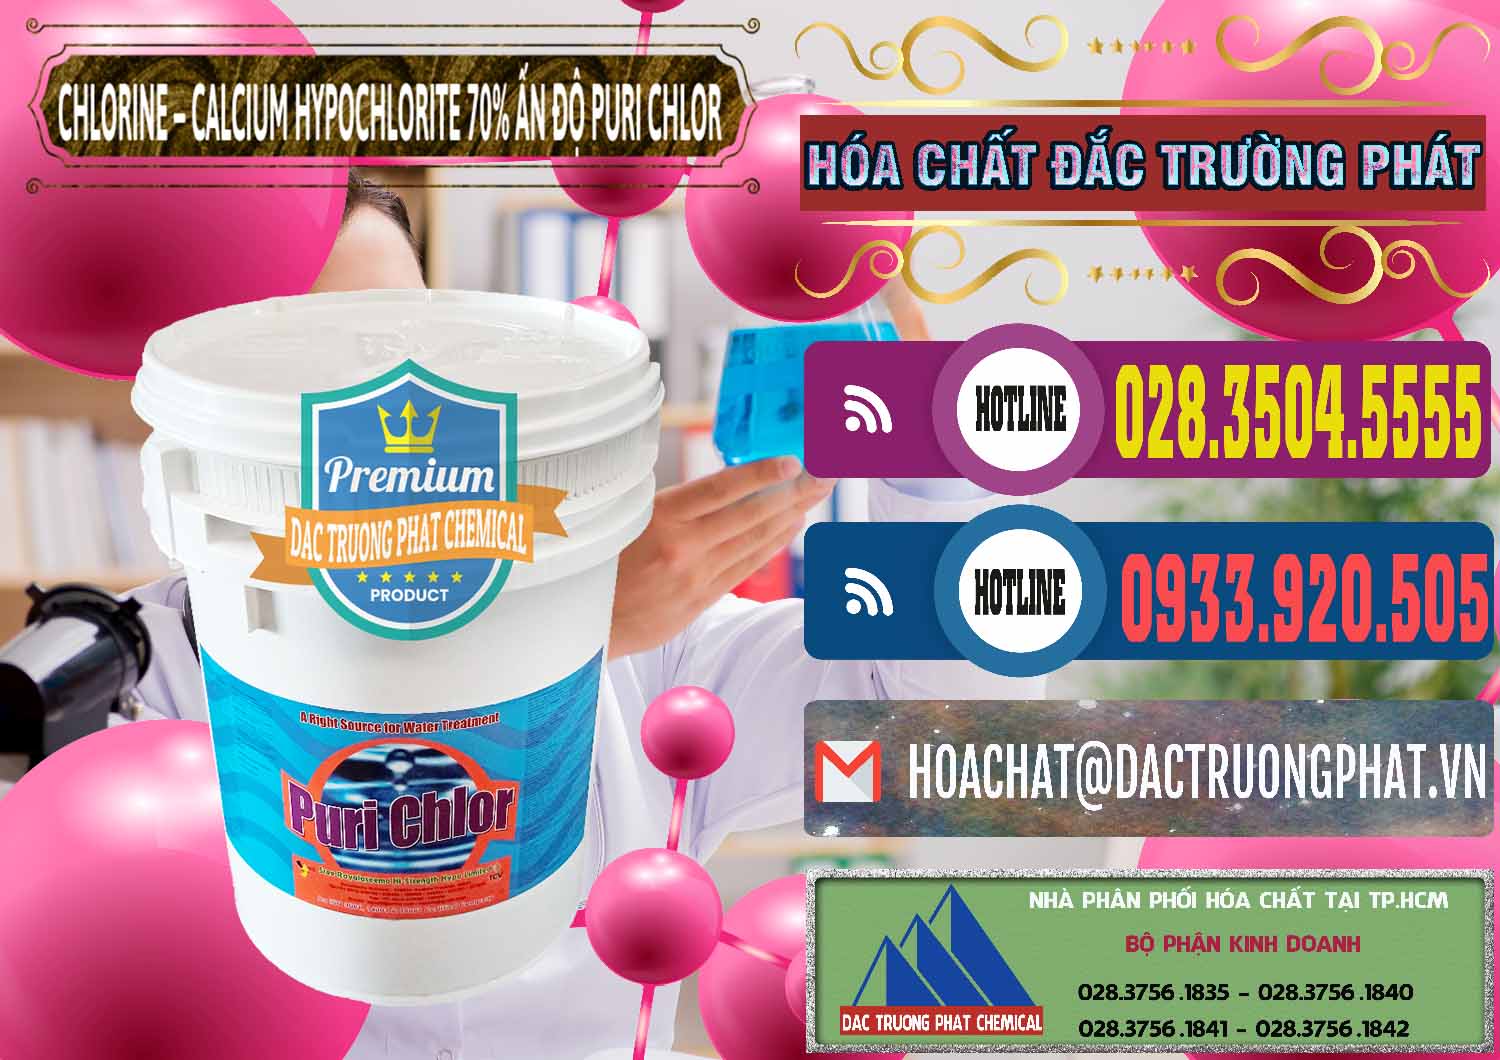 Nơi chuyên bán & cung ứng Chlorine – Clorin 70% Puri Chlo Ấn Độ India - 0123 - Đơn vị chuyên cung cấp & bán hóa chất tại TP.HCM - muabanhoachat.com.vn